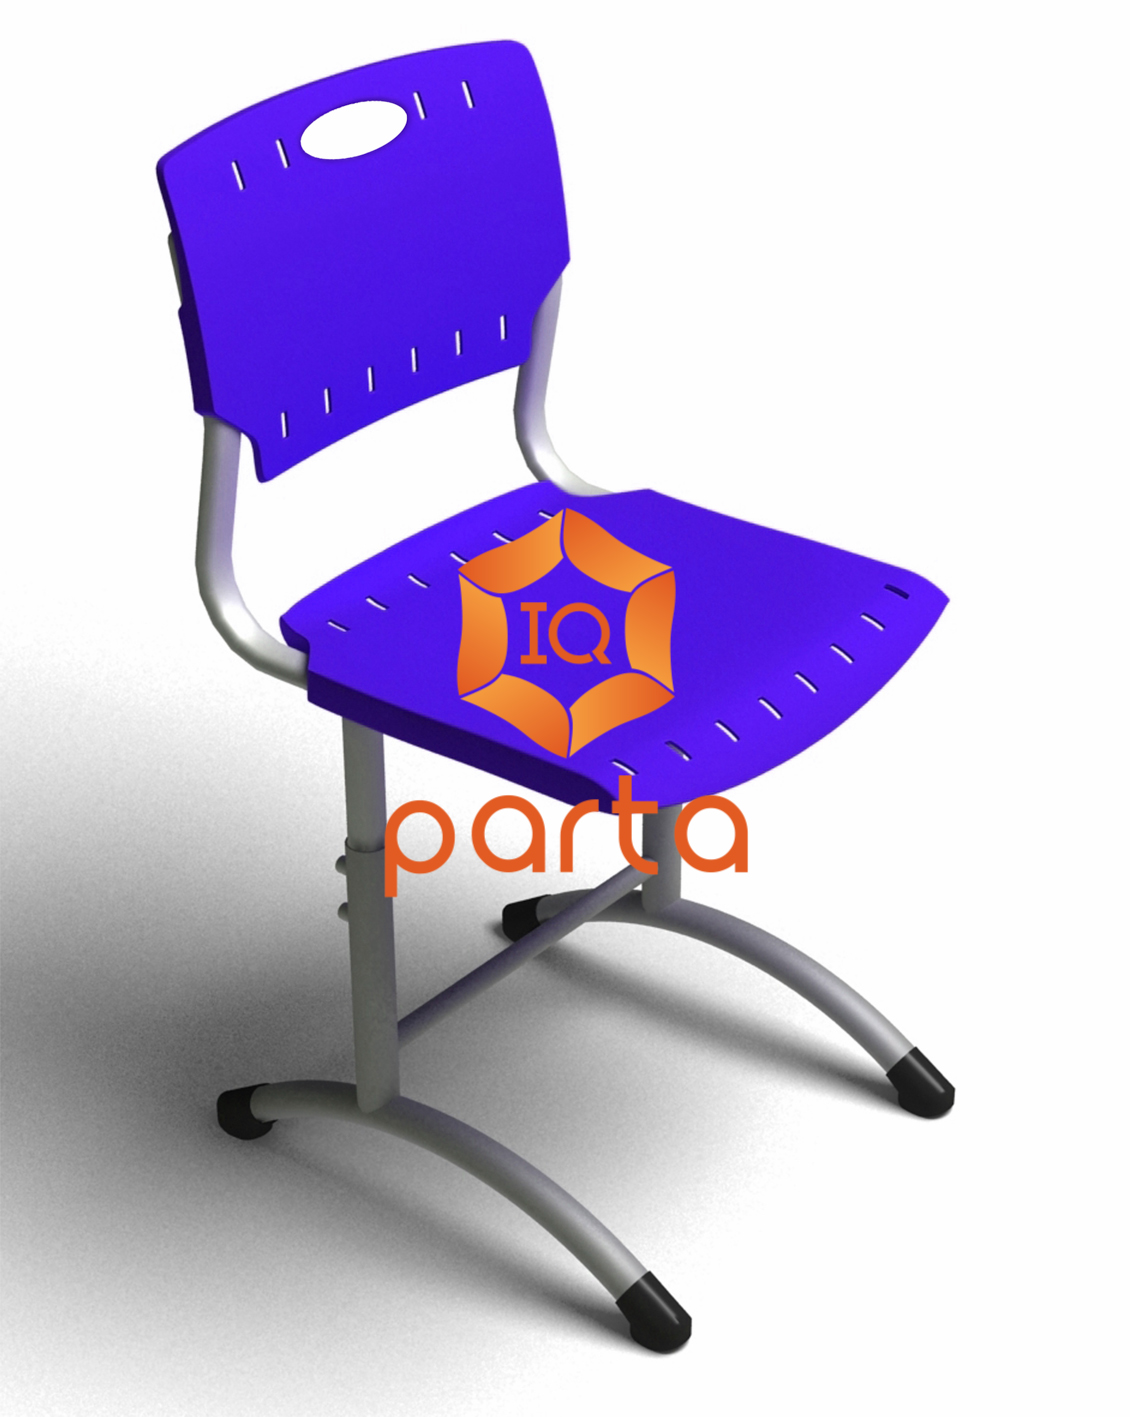 стул ученический с пластиковым сиденьем и спинкой